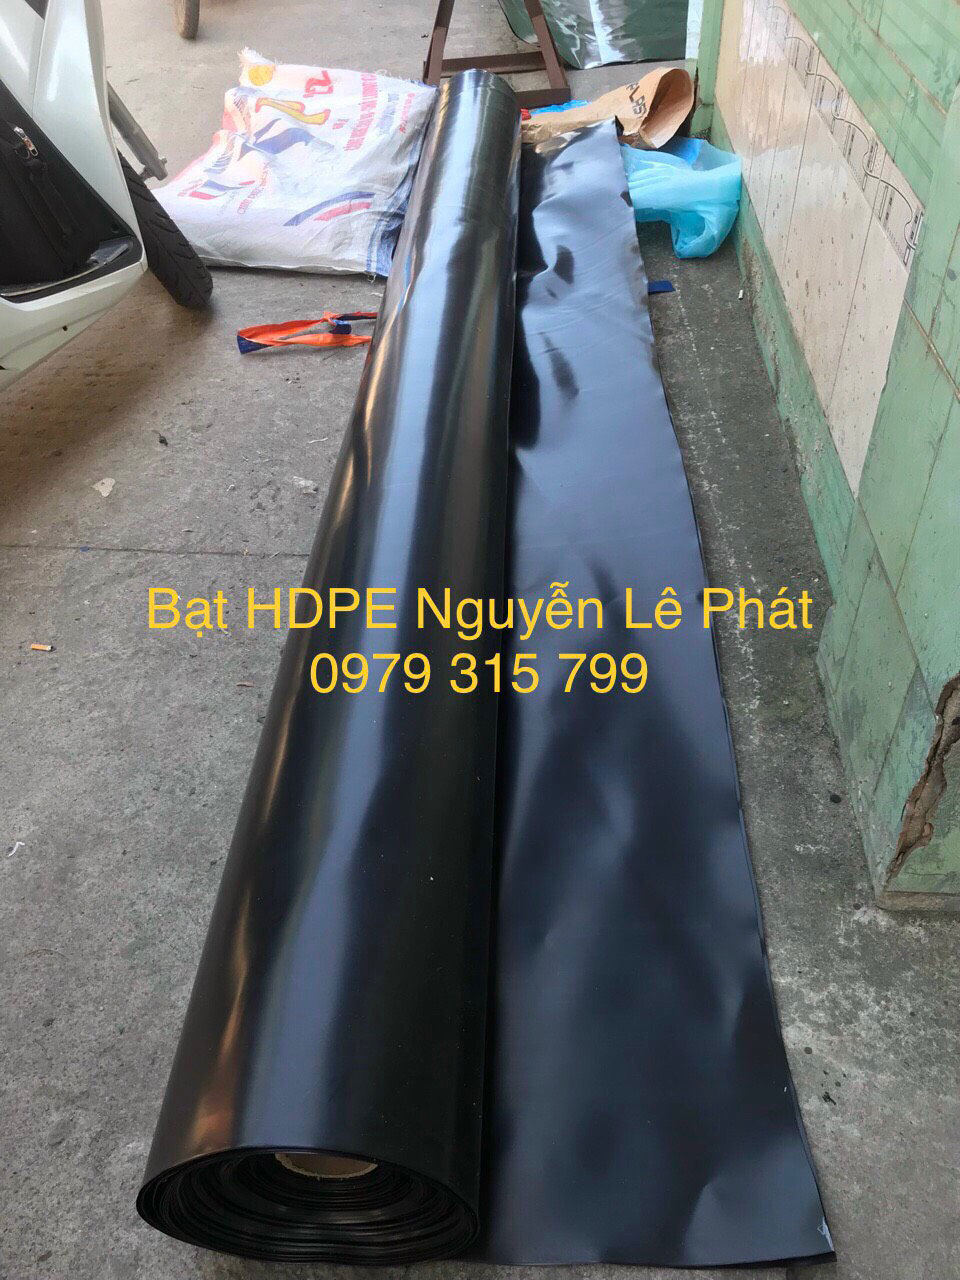 Bạt lót ao hồ chứa nước nhựa HDPE chống thấm chuyên dụng